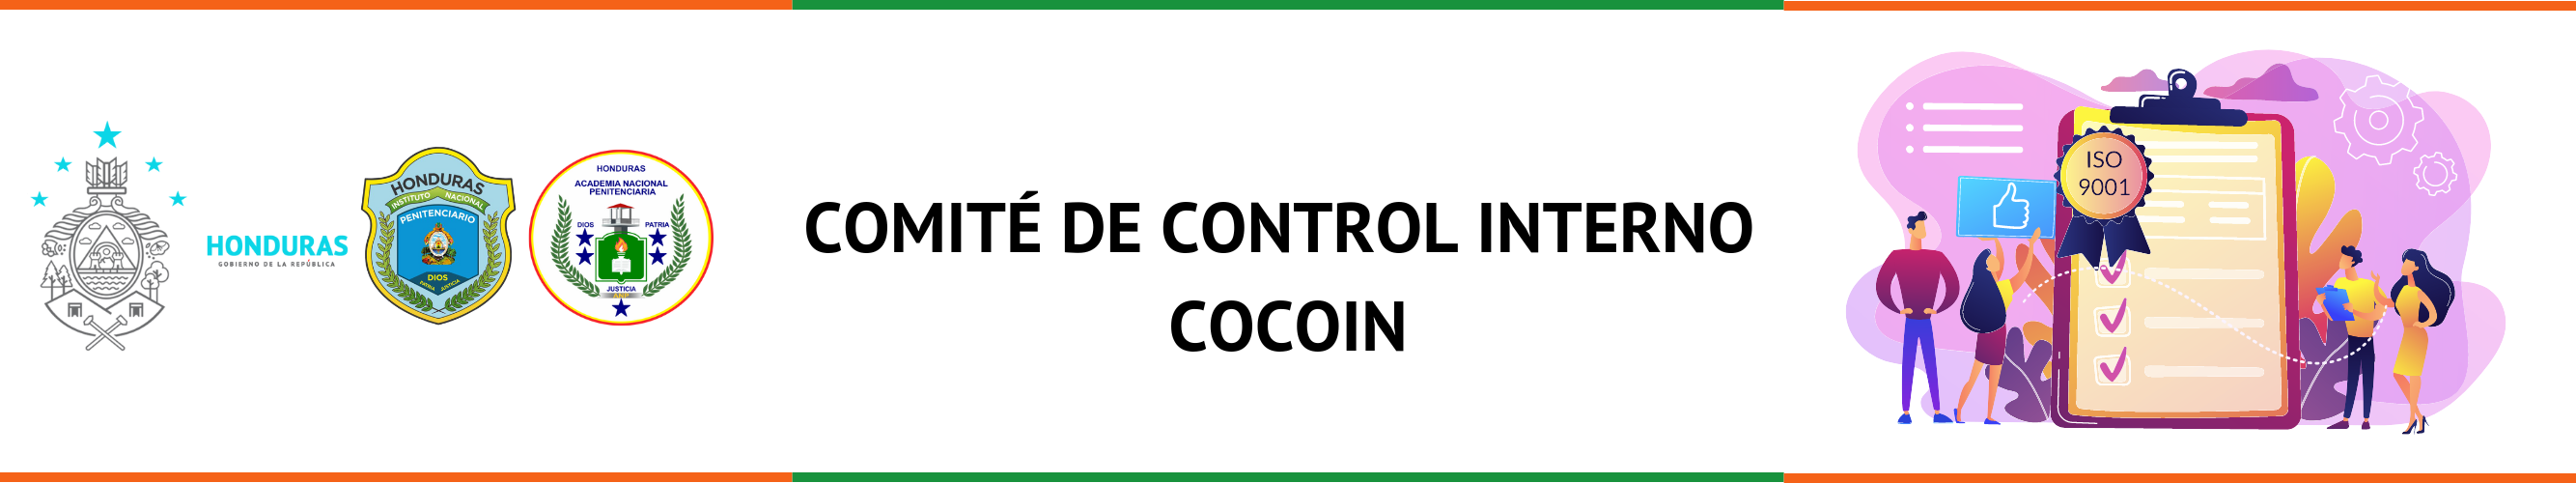 COMITÉ DE CONTROL INTERNO COCOIN(1)